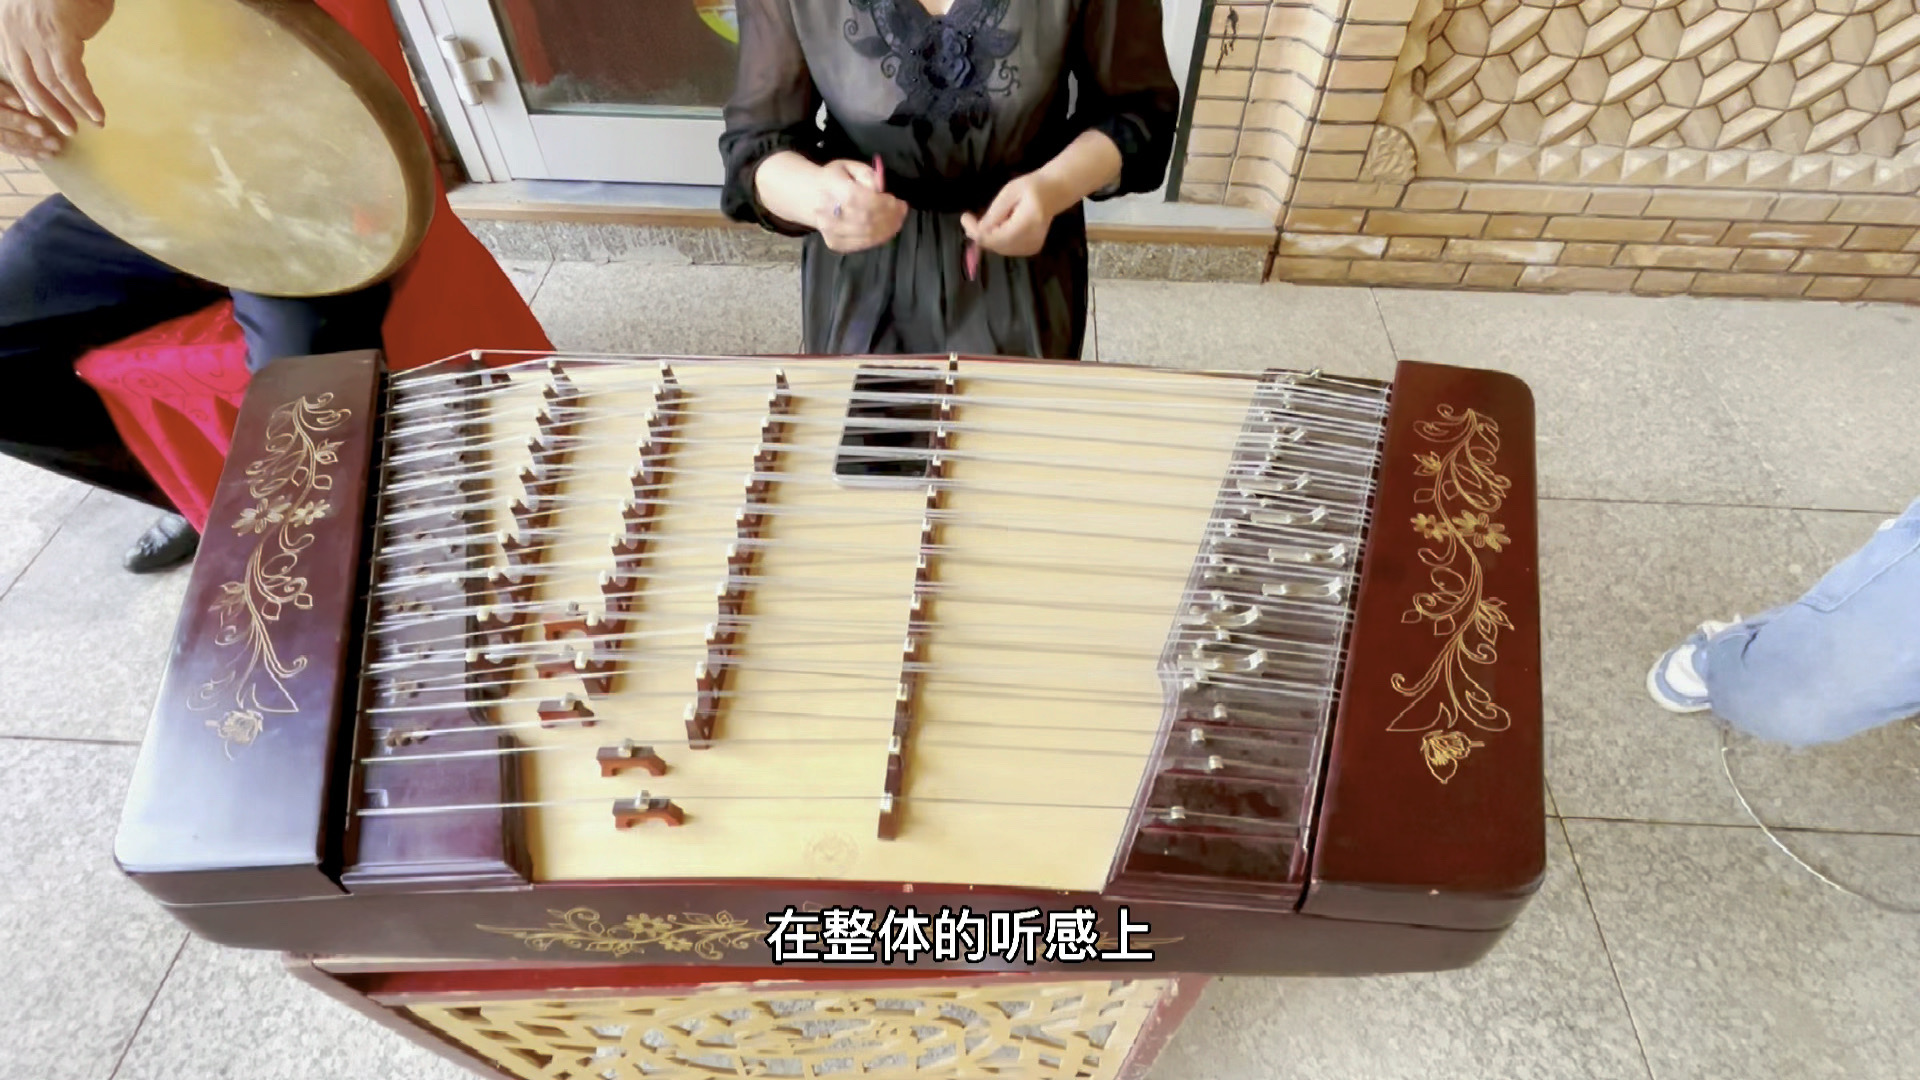 新疆民族乐器村采风纪录片（下）